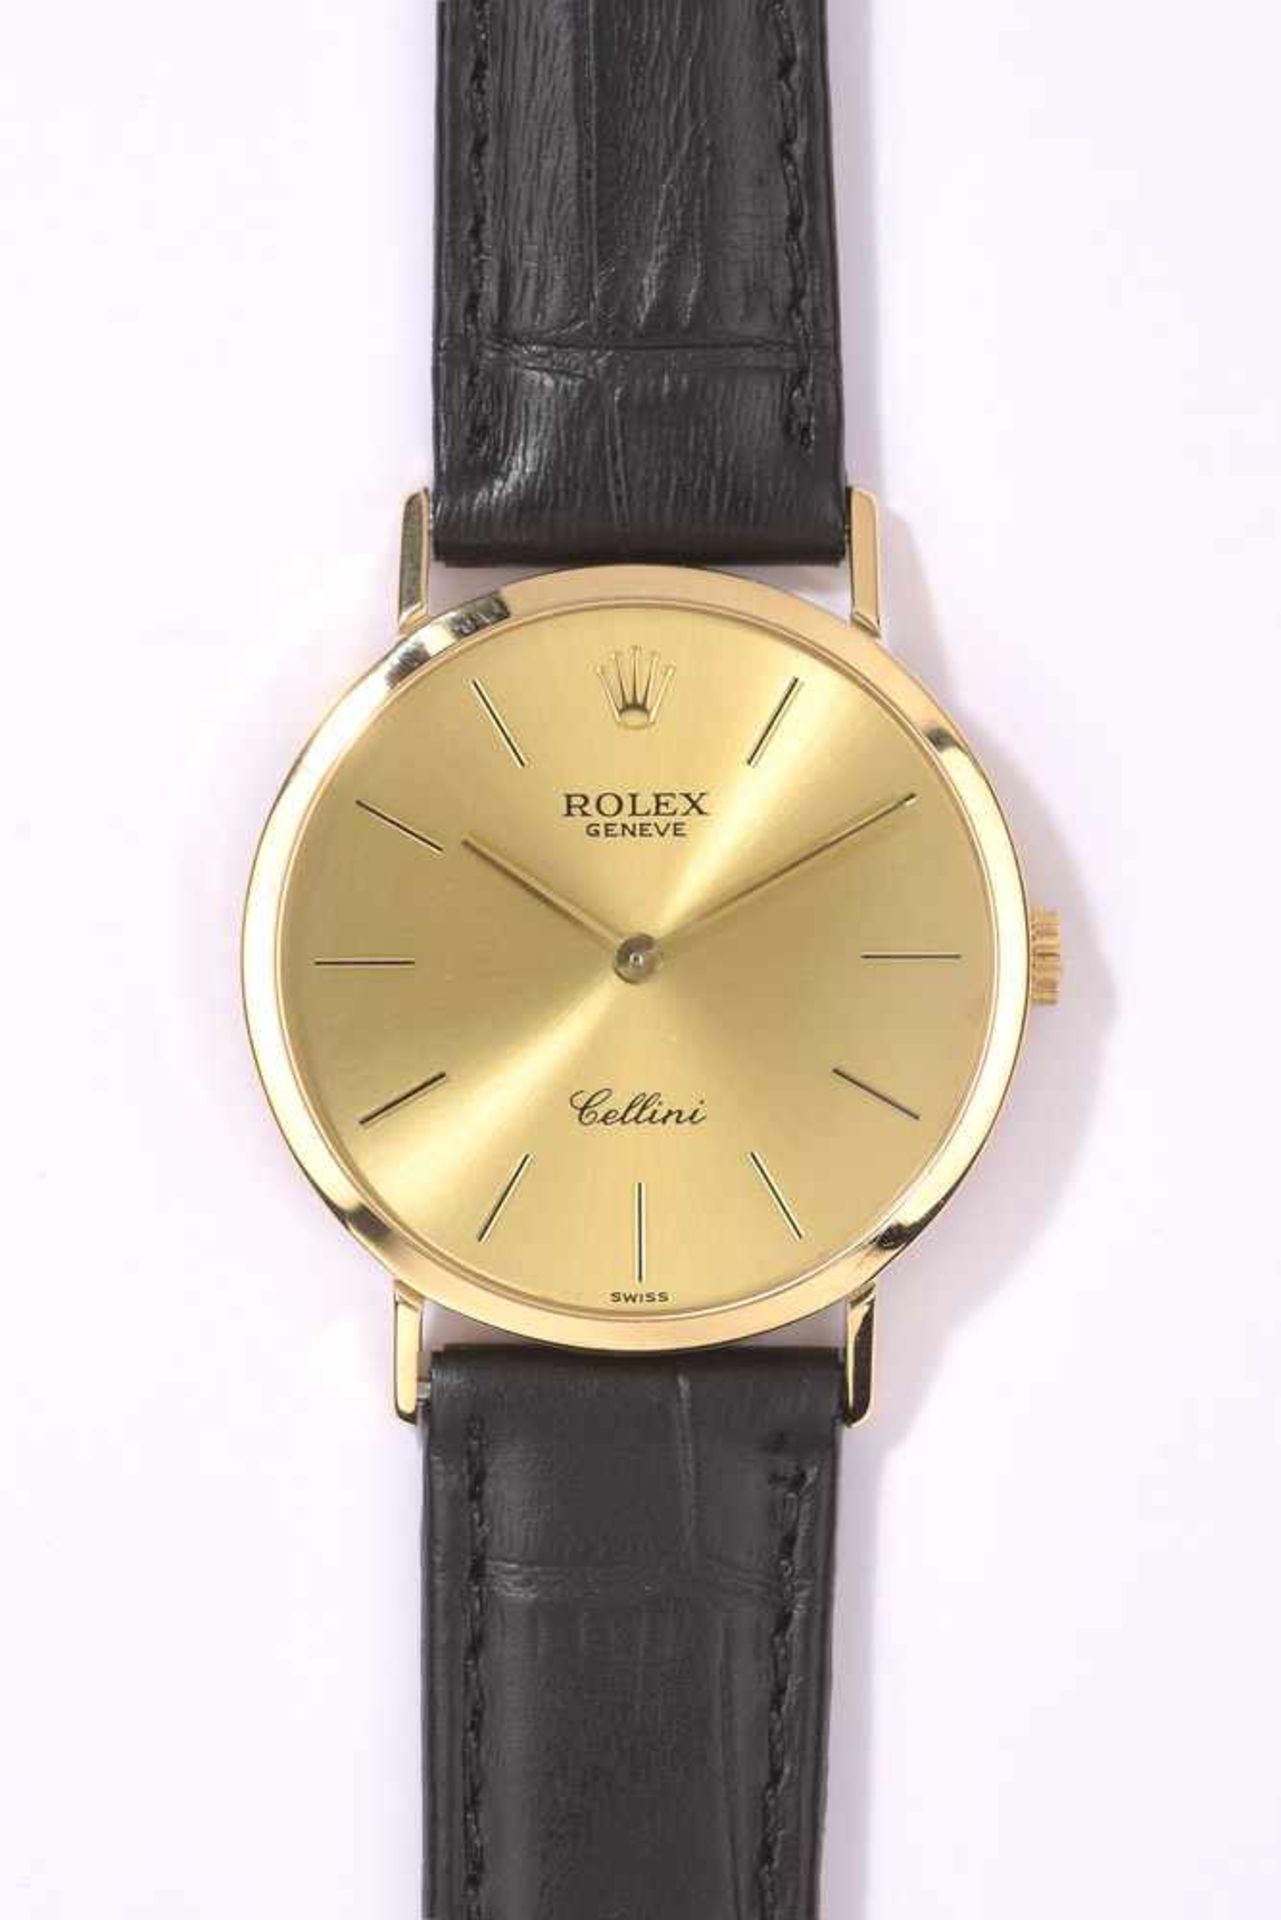 Herrenarmbanduhr von Rolex, Cellini750-Goldgehäuse. Lederband mit Originaler 750-Goldschließe. Guter